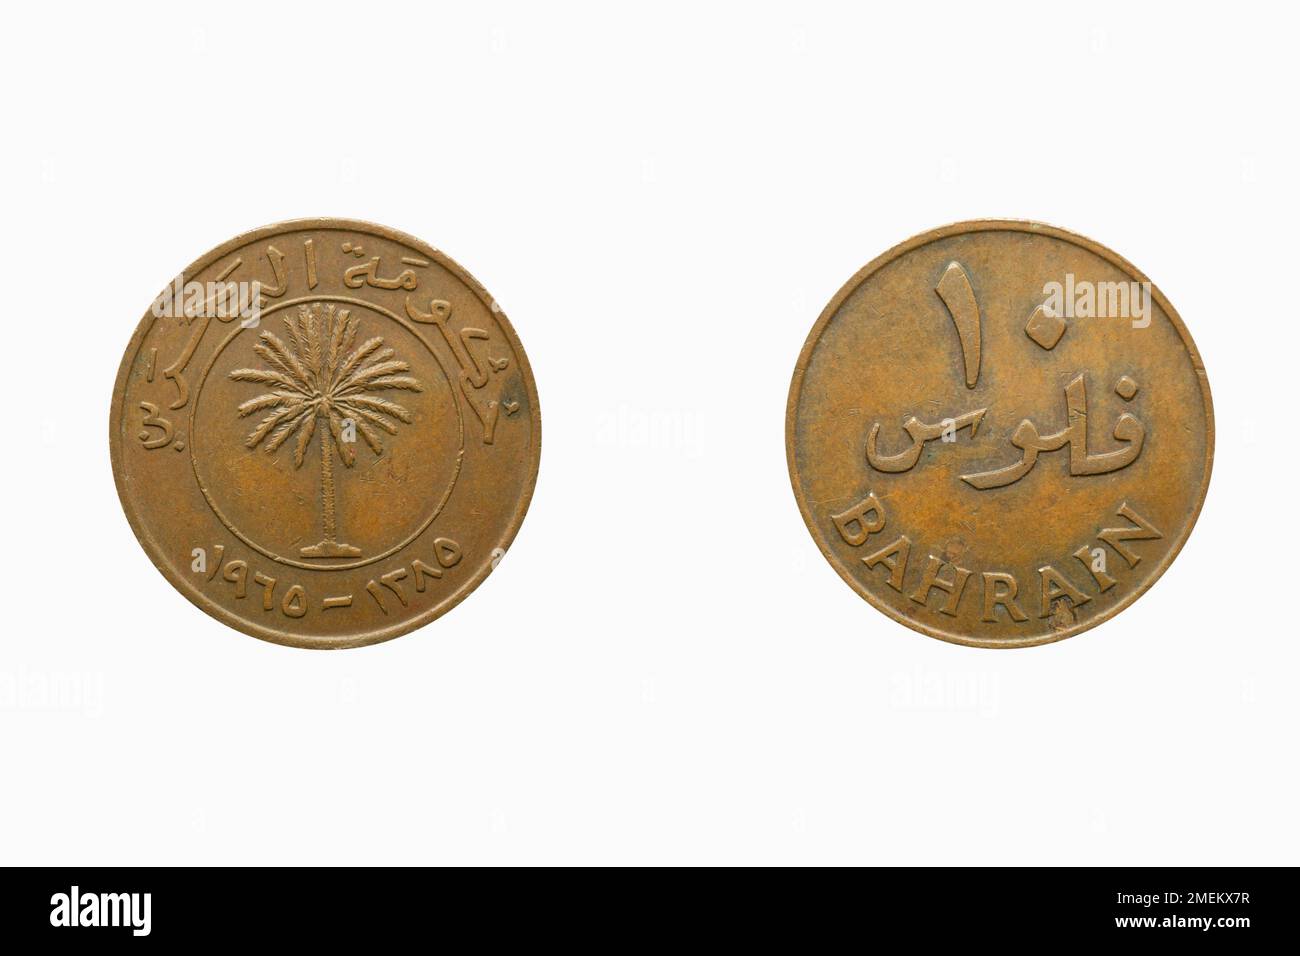 Bahrain 10 files bronze coin, studio shot against white background Stock Photo